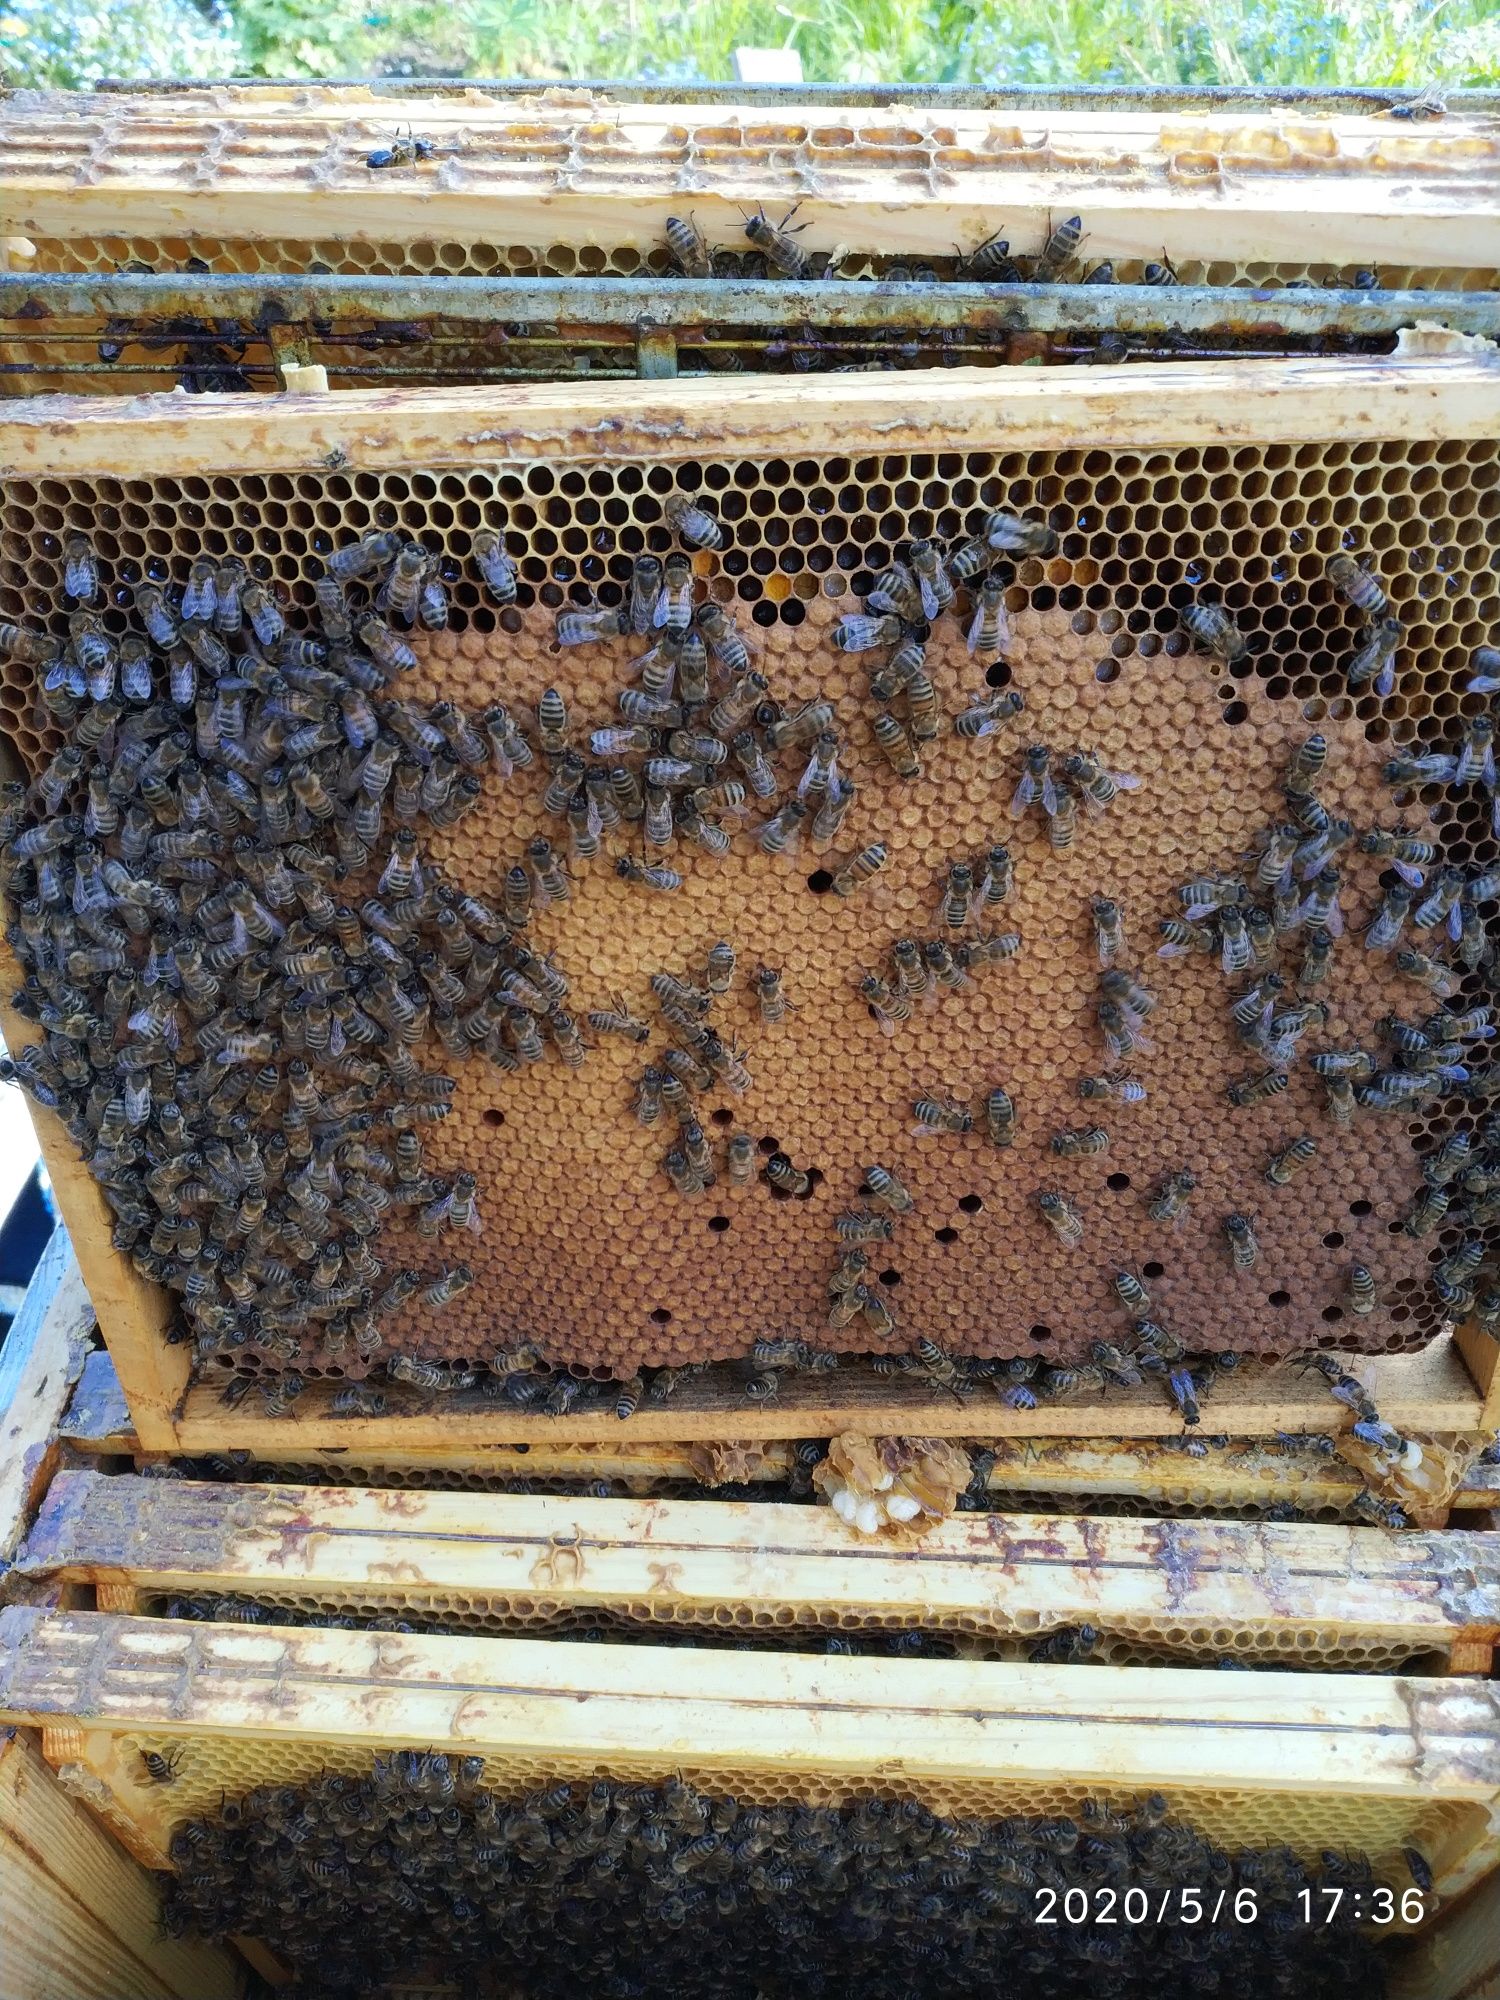 Pszczoły,odkłady pszczele  tegoroczne.